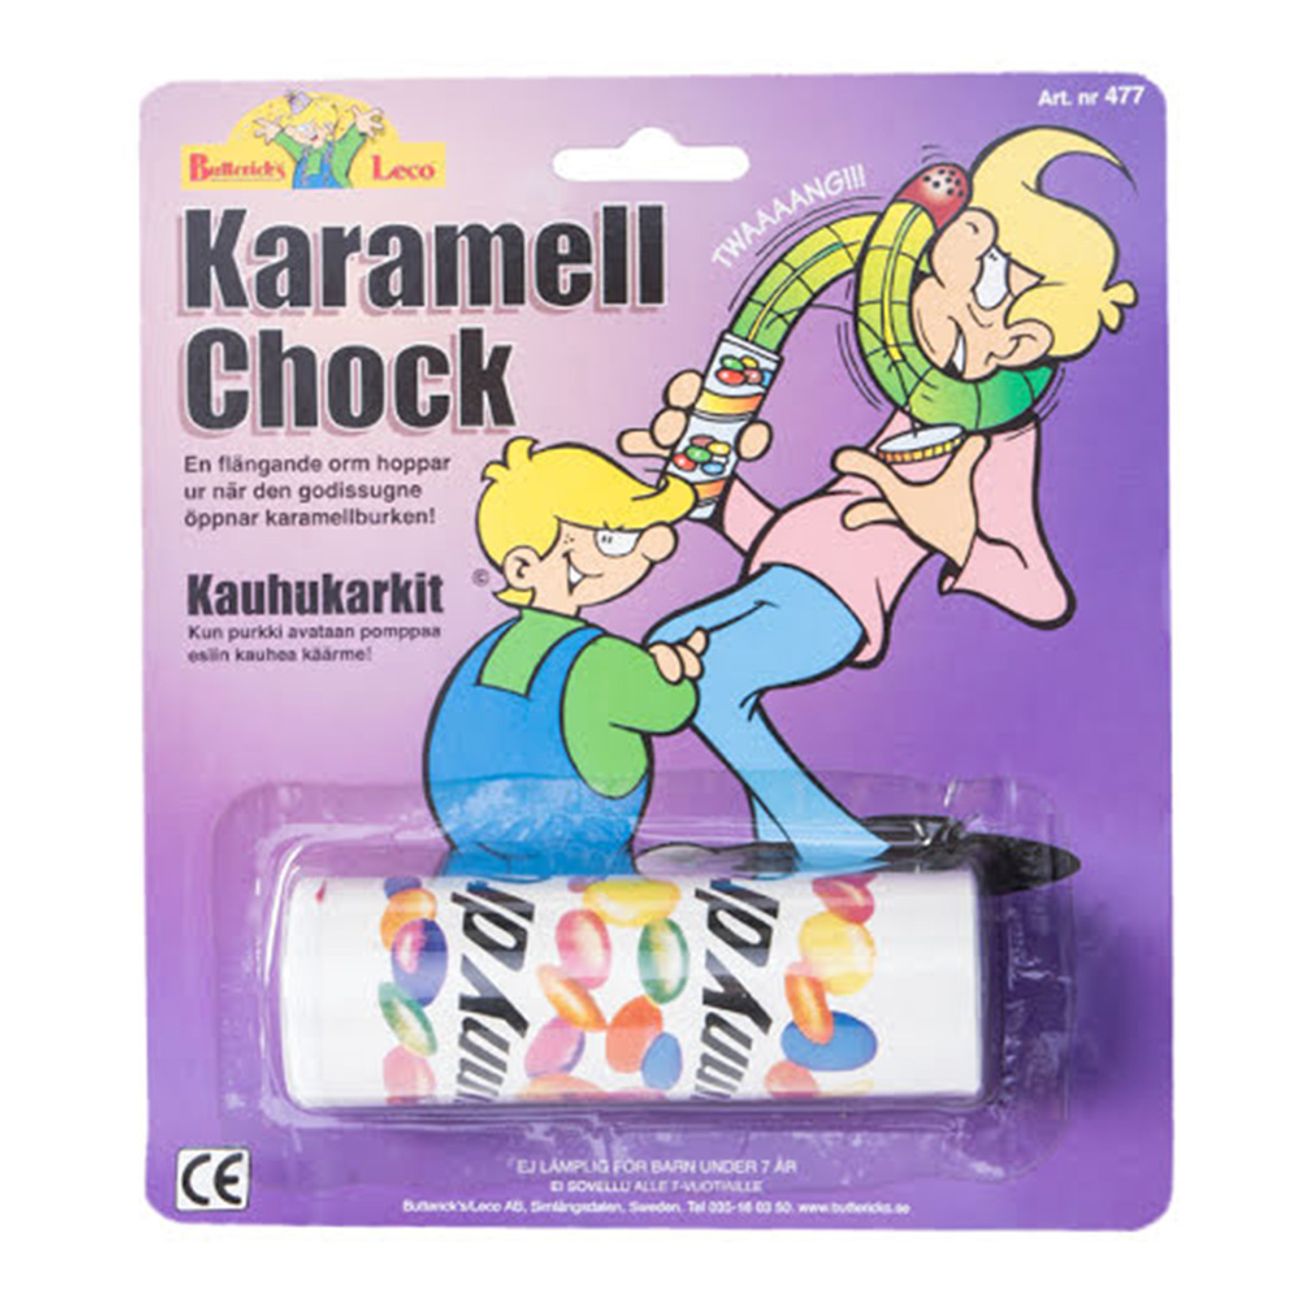 karamellchock-med-orm-1